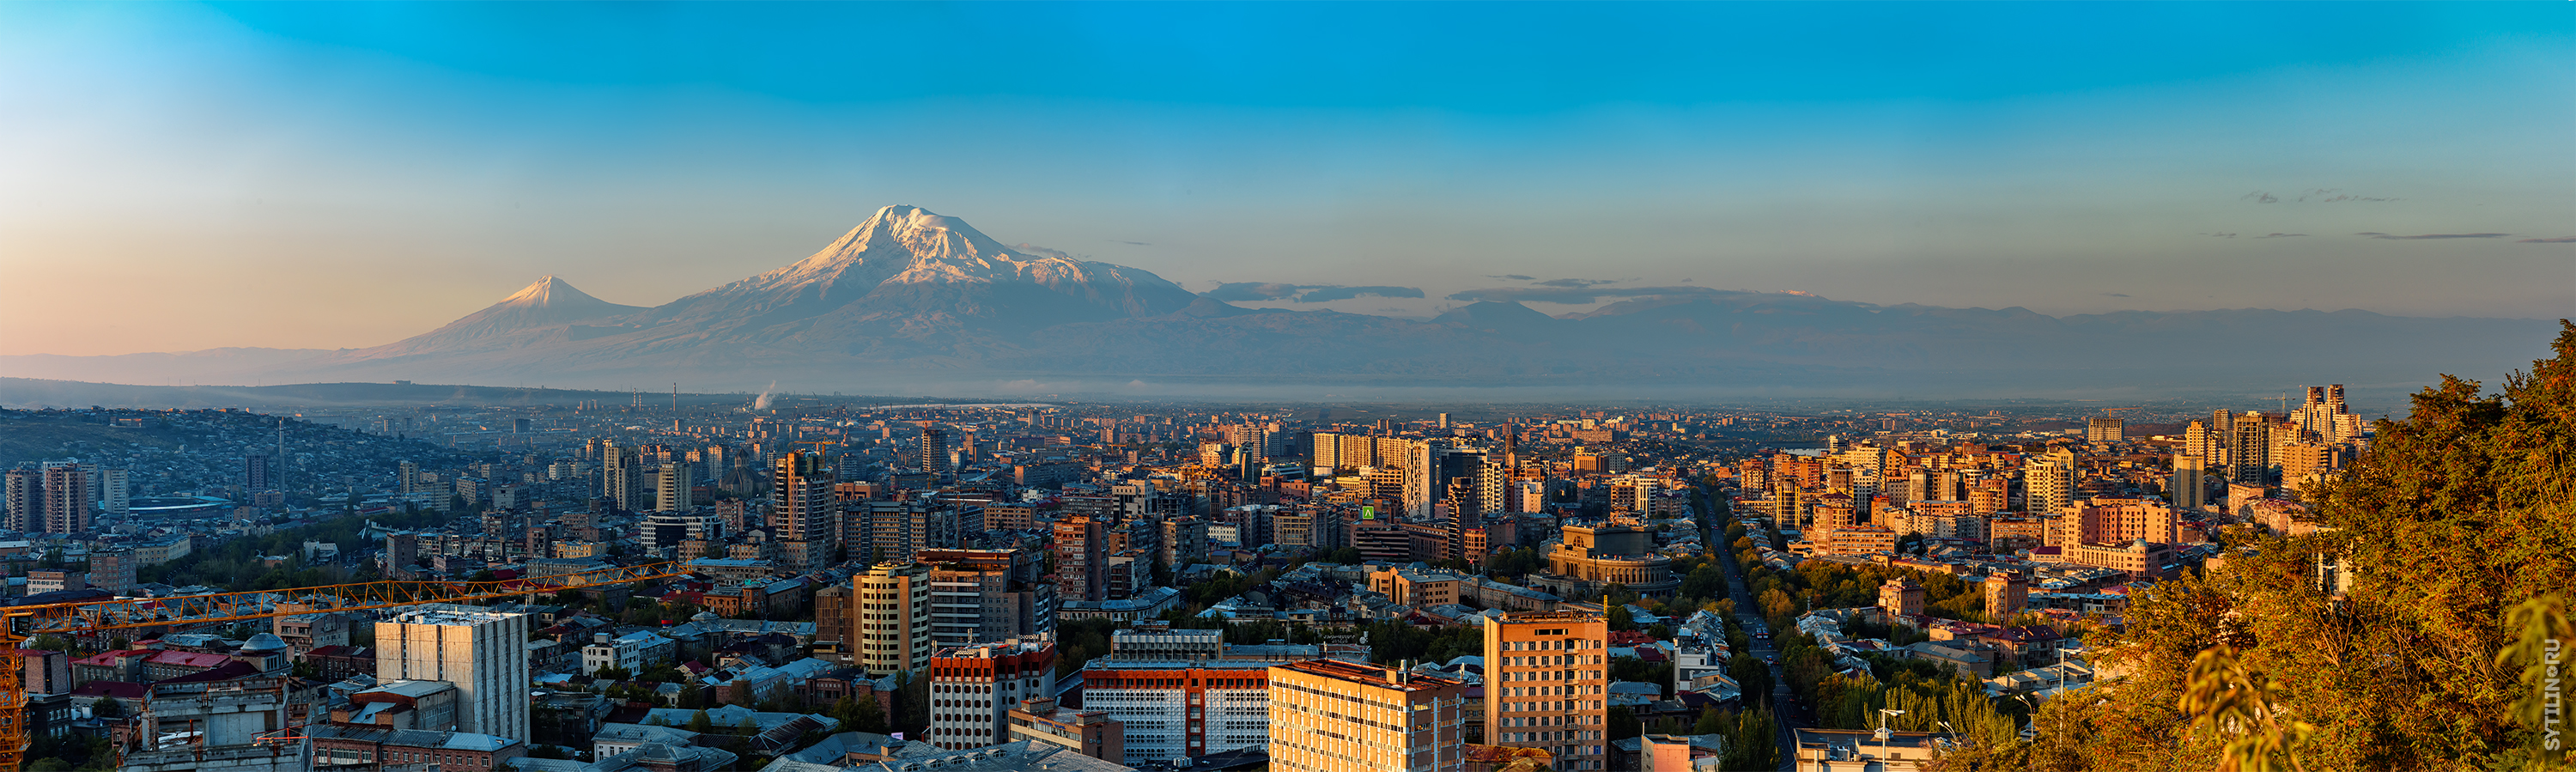 Панорама, Ереван, Армения, Арарат, гора, город, утро, рассвет, солнечный, дымка, туман, широкоугольный, туризм, путешествие, экскурсия, тур, поездка,, Сытилин Павел